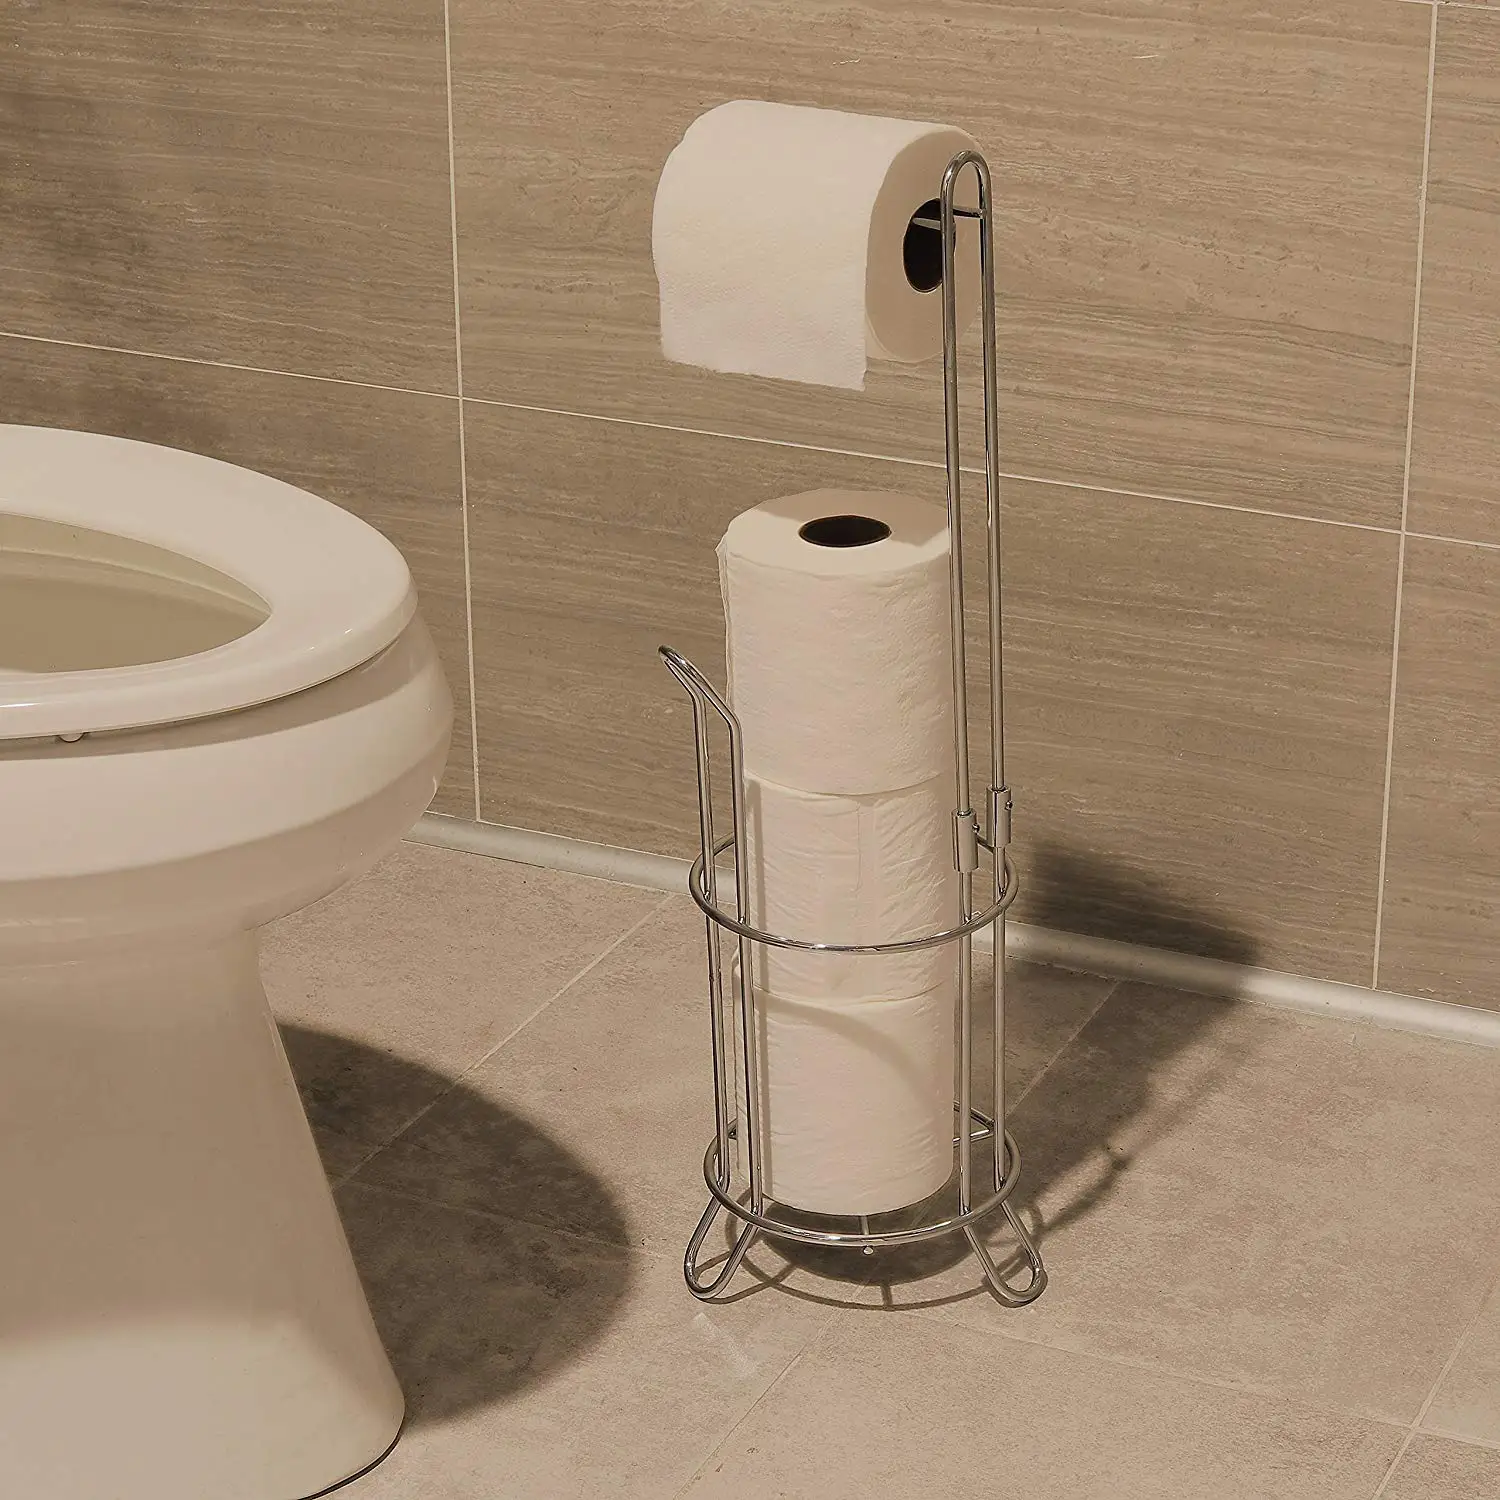 Отдельно стоящий держатель рулона туалетной бумаги и диспенсер для ванных комнат Серебряная подставка для унитаза с дополнительным рулоном для хранения до 4 рулонов